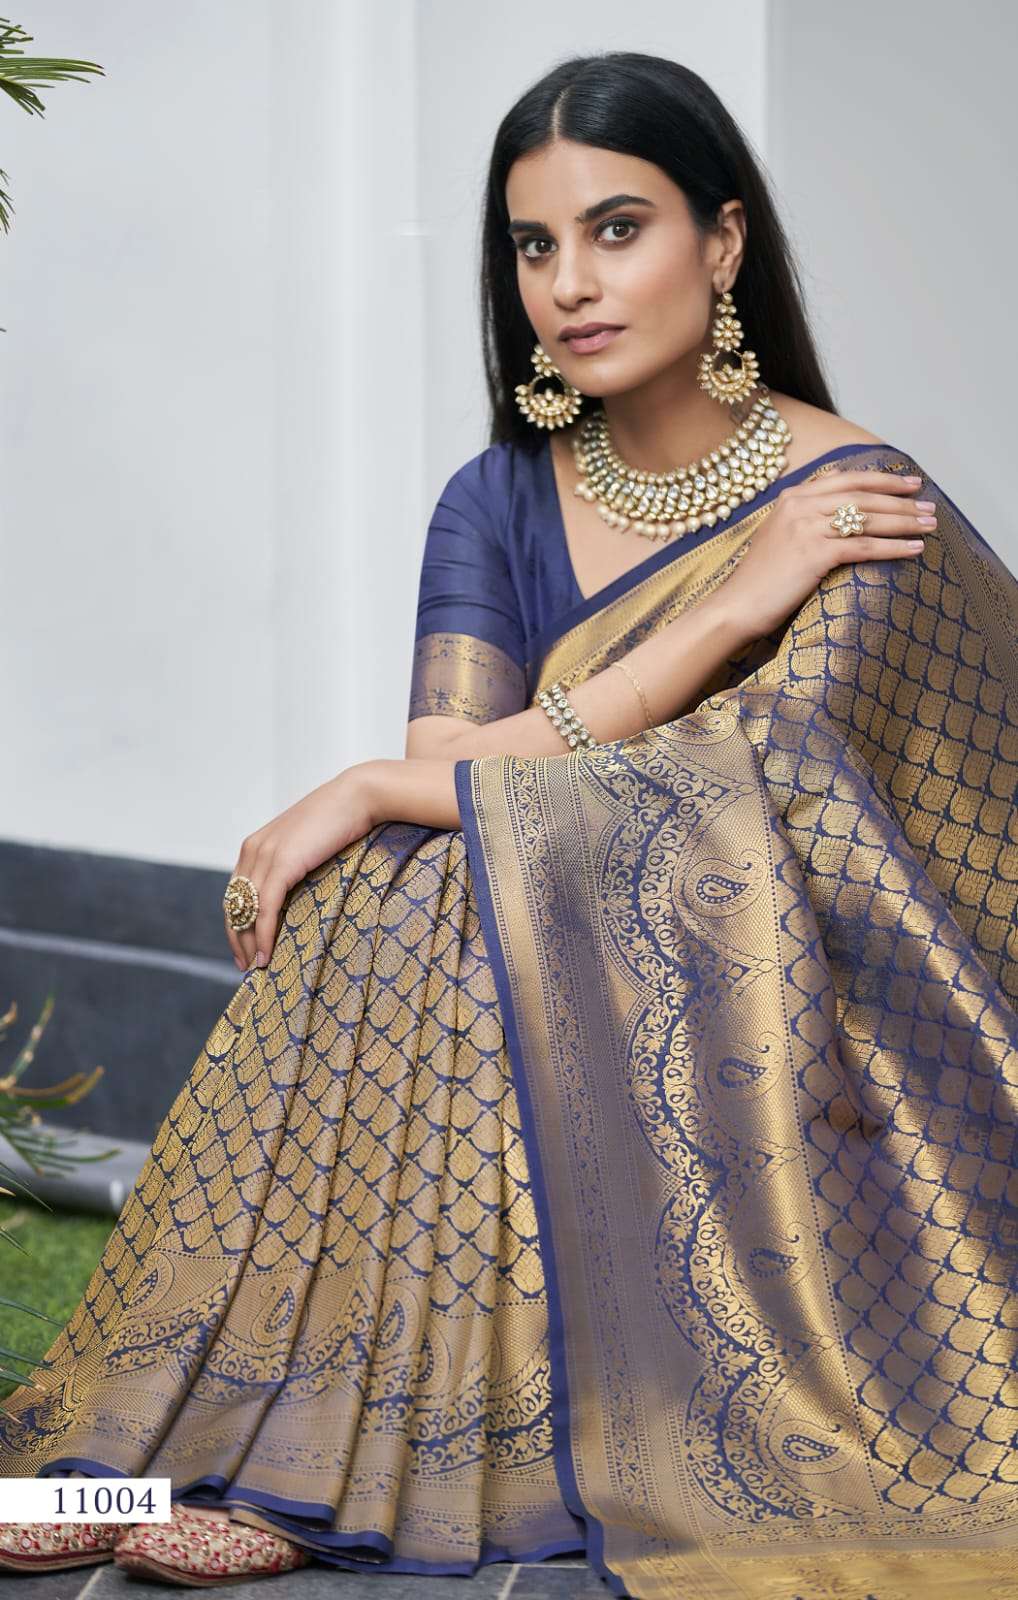 Rajpath Arvi kanjivaram Silk With Weaving Design Saree colle...